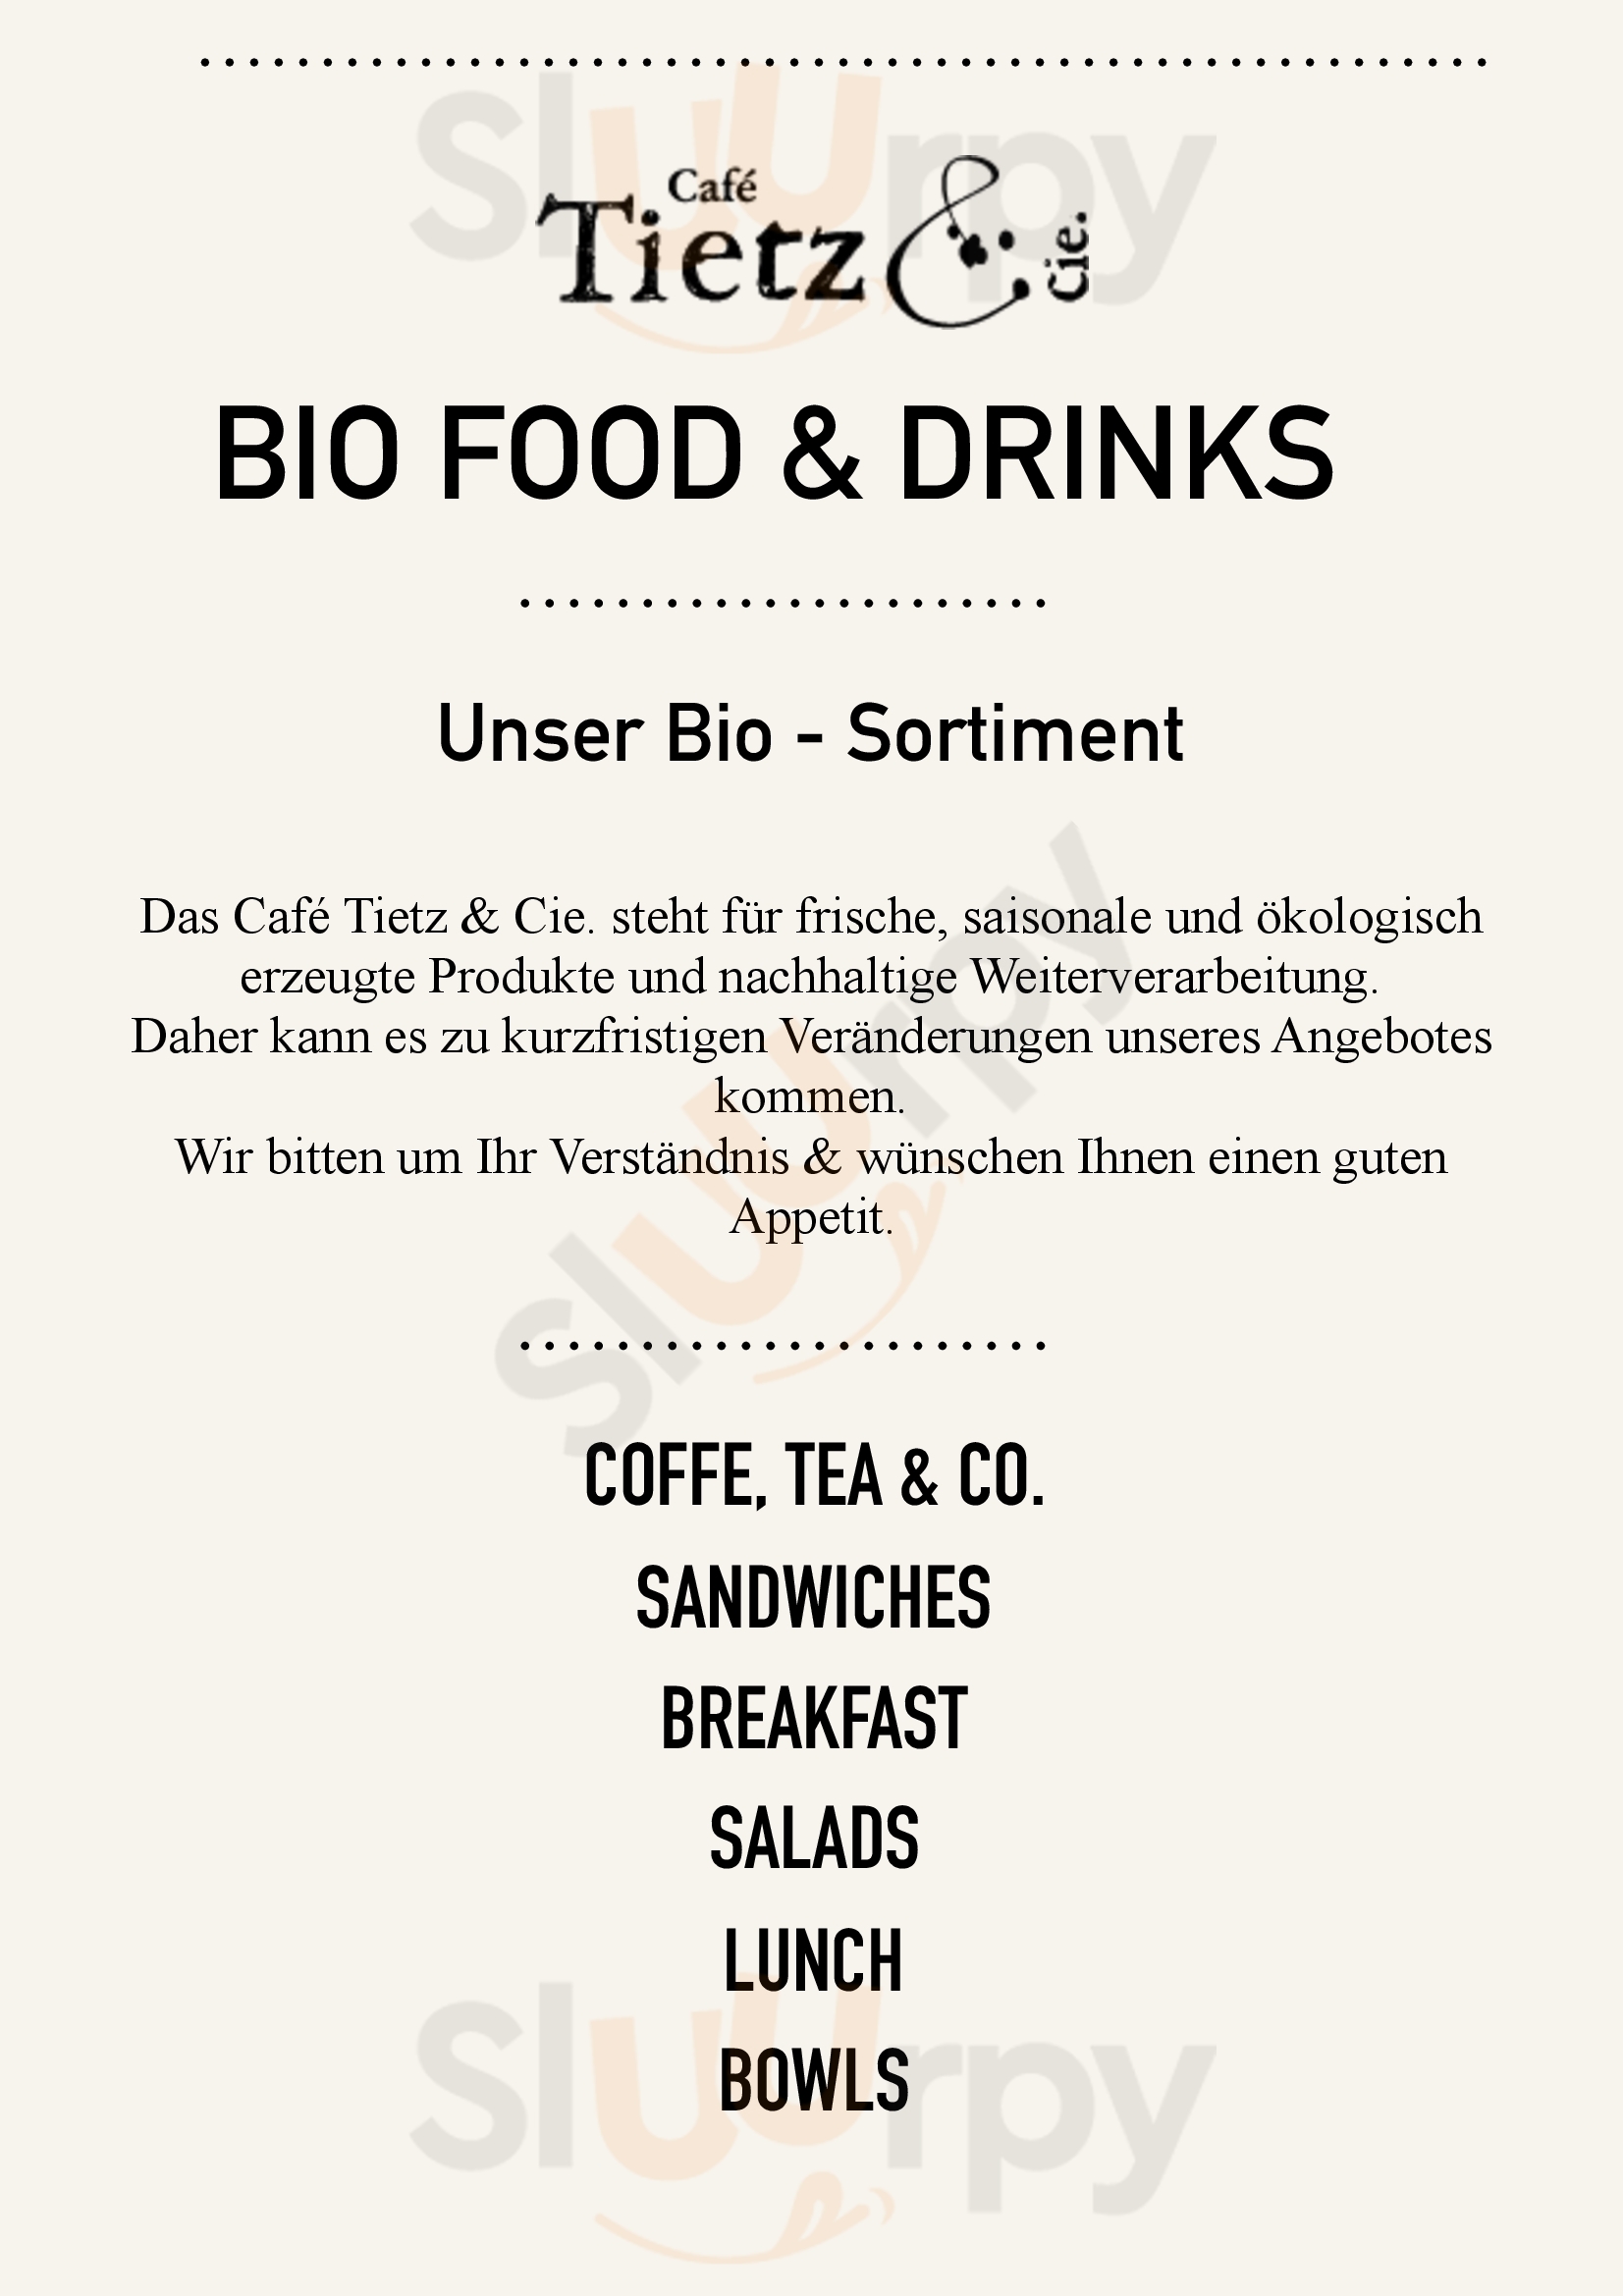 Cafe Tietz & Cie. Berlin Menu - 1